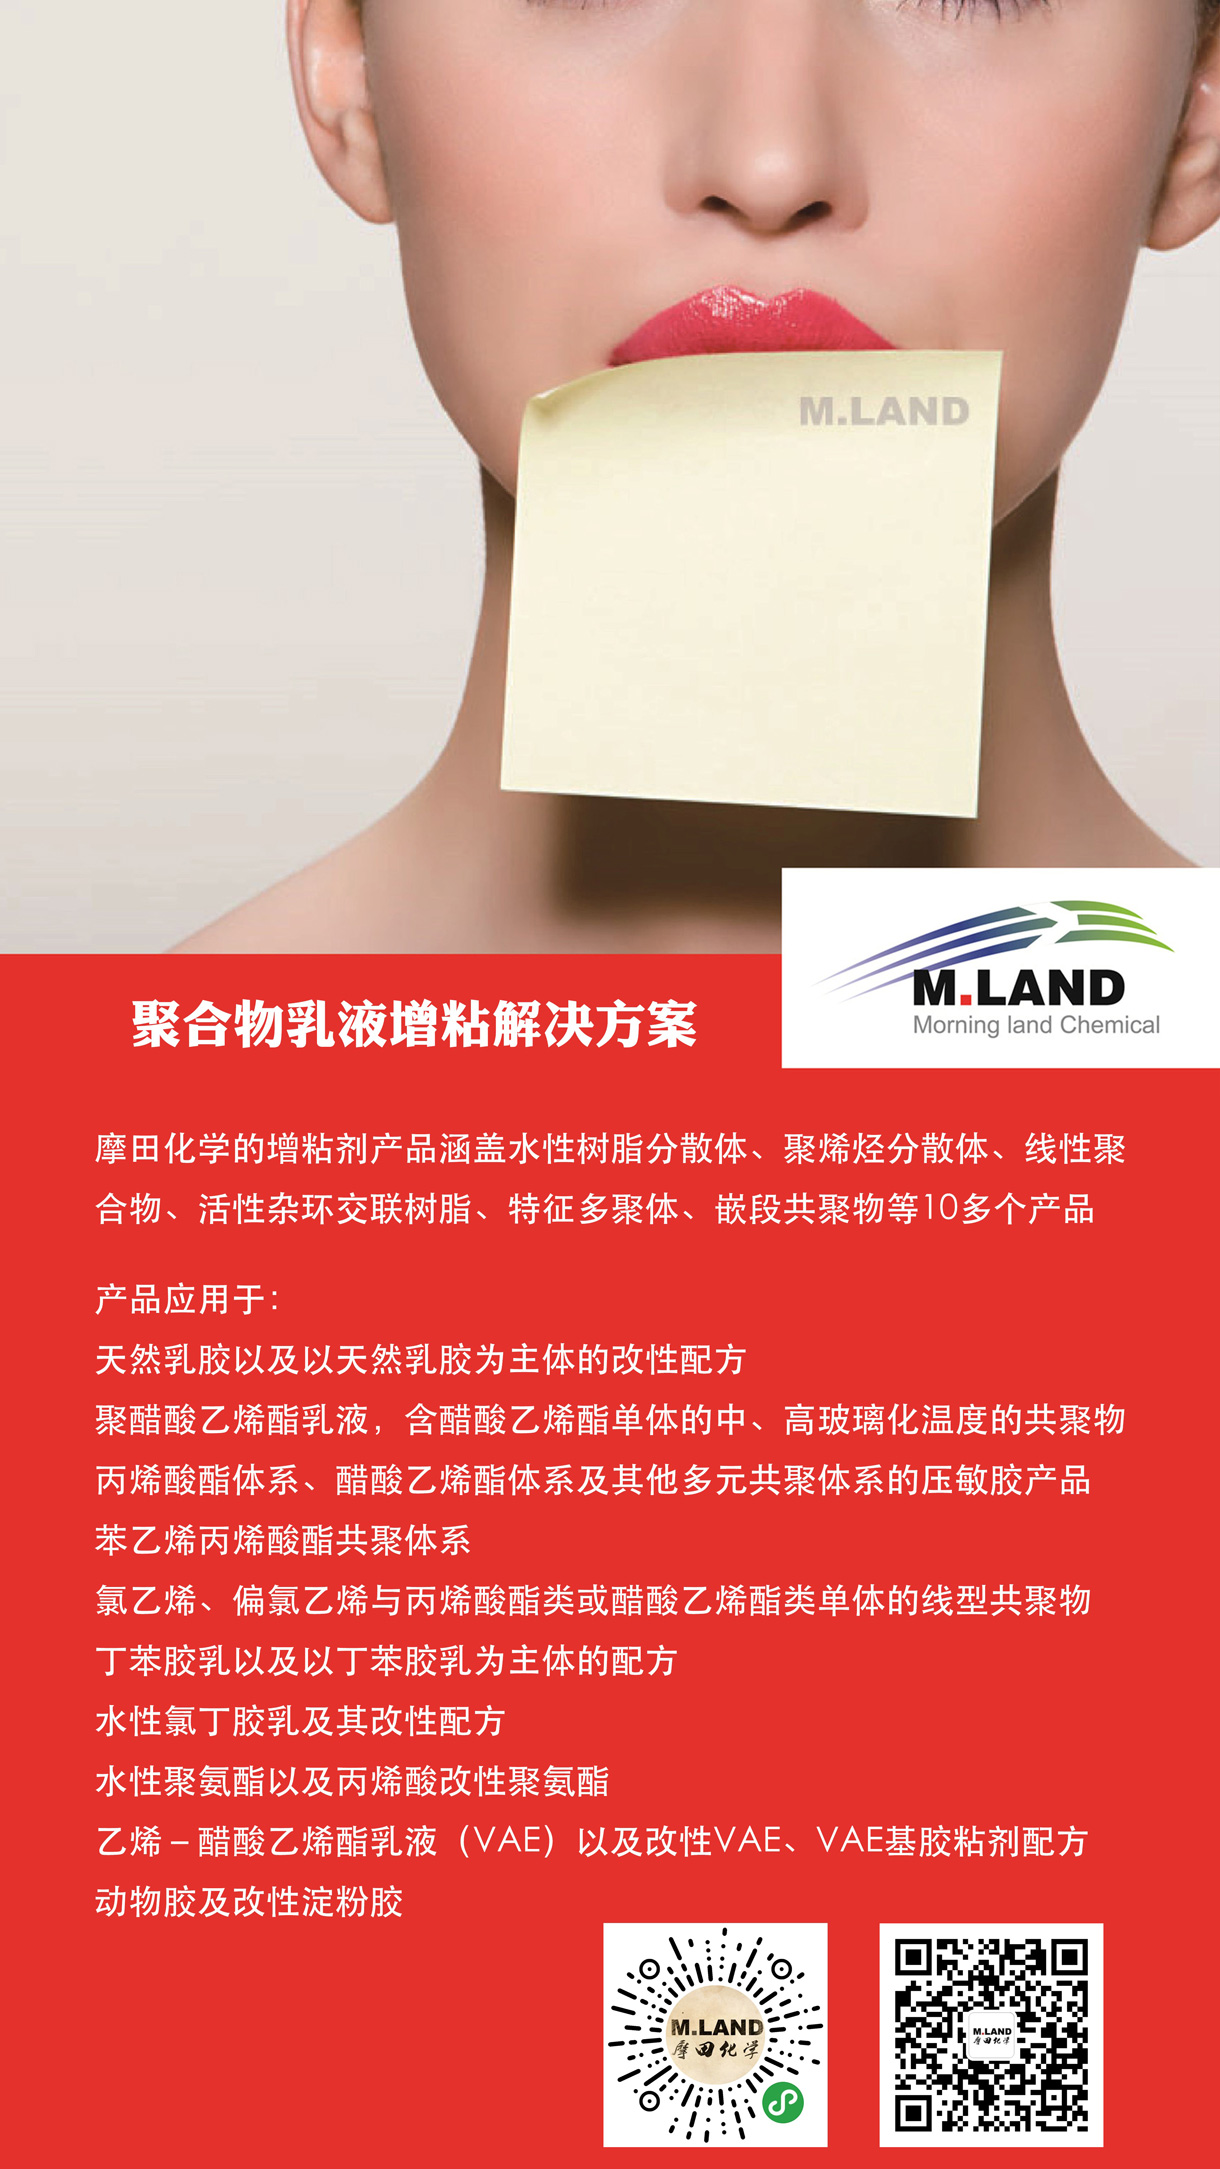 中国胶粘剂交易平台将亮相CIPPME上海国际包装展